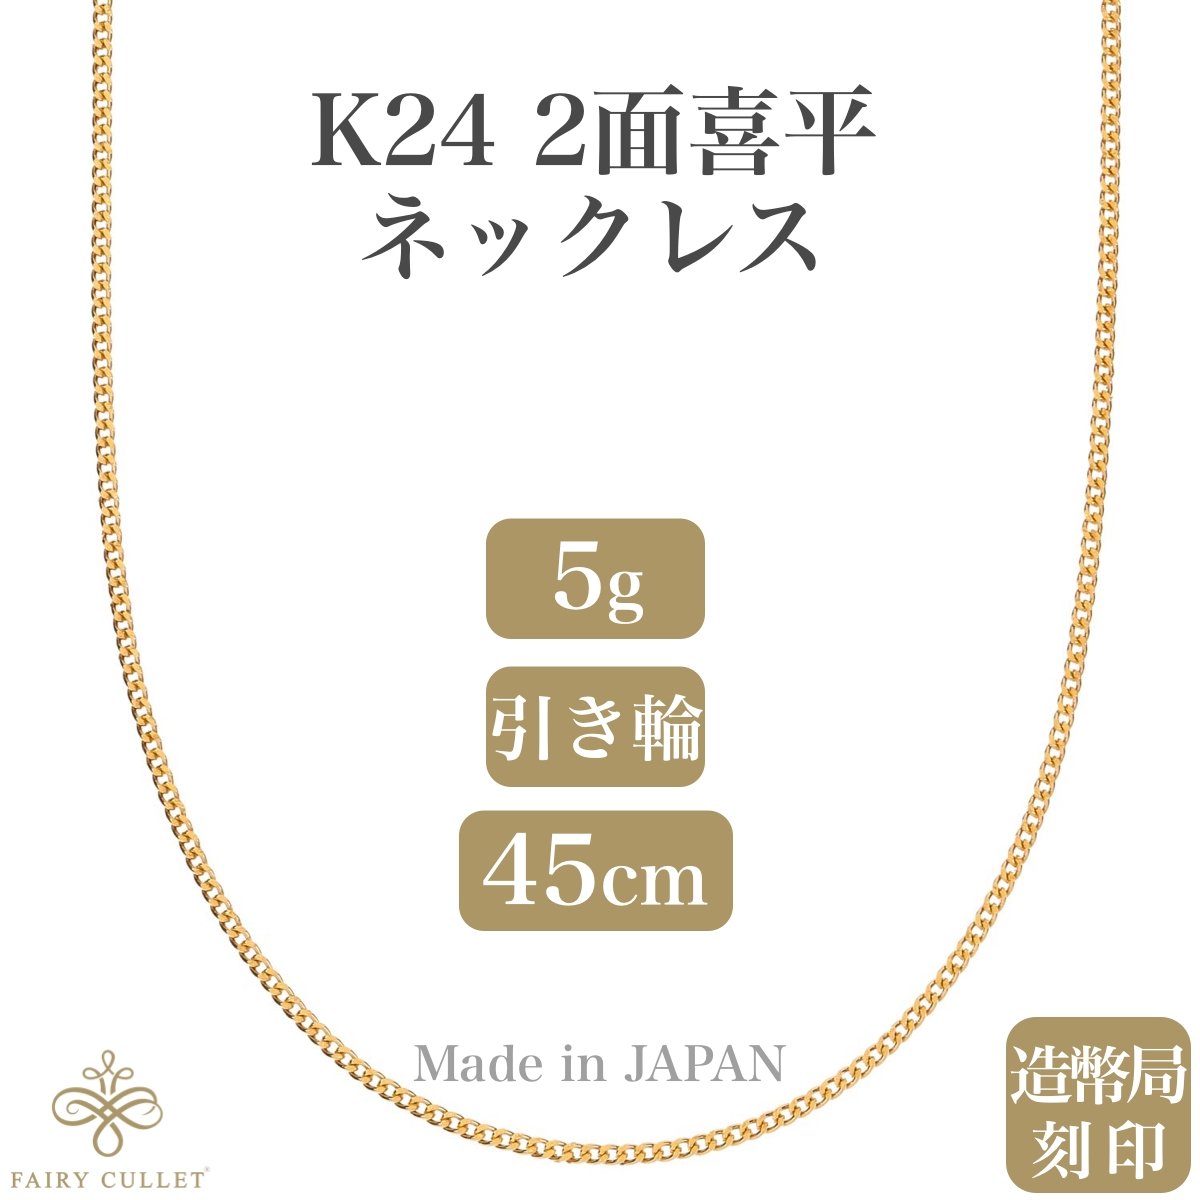 24金ネックレス K24 2面喜平チェーン 日本製 純金 検定印 5g 45cm引き輪 - 喜平ジュエリーの専門店 FAIRY CULLET(フェアリーカレット)